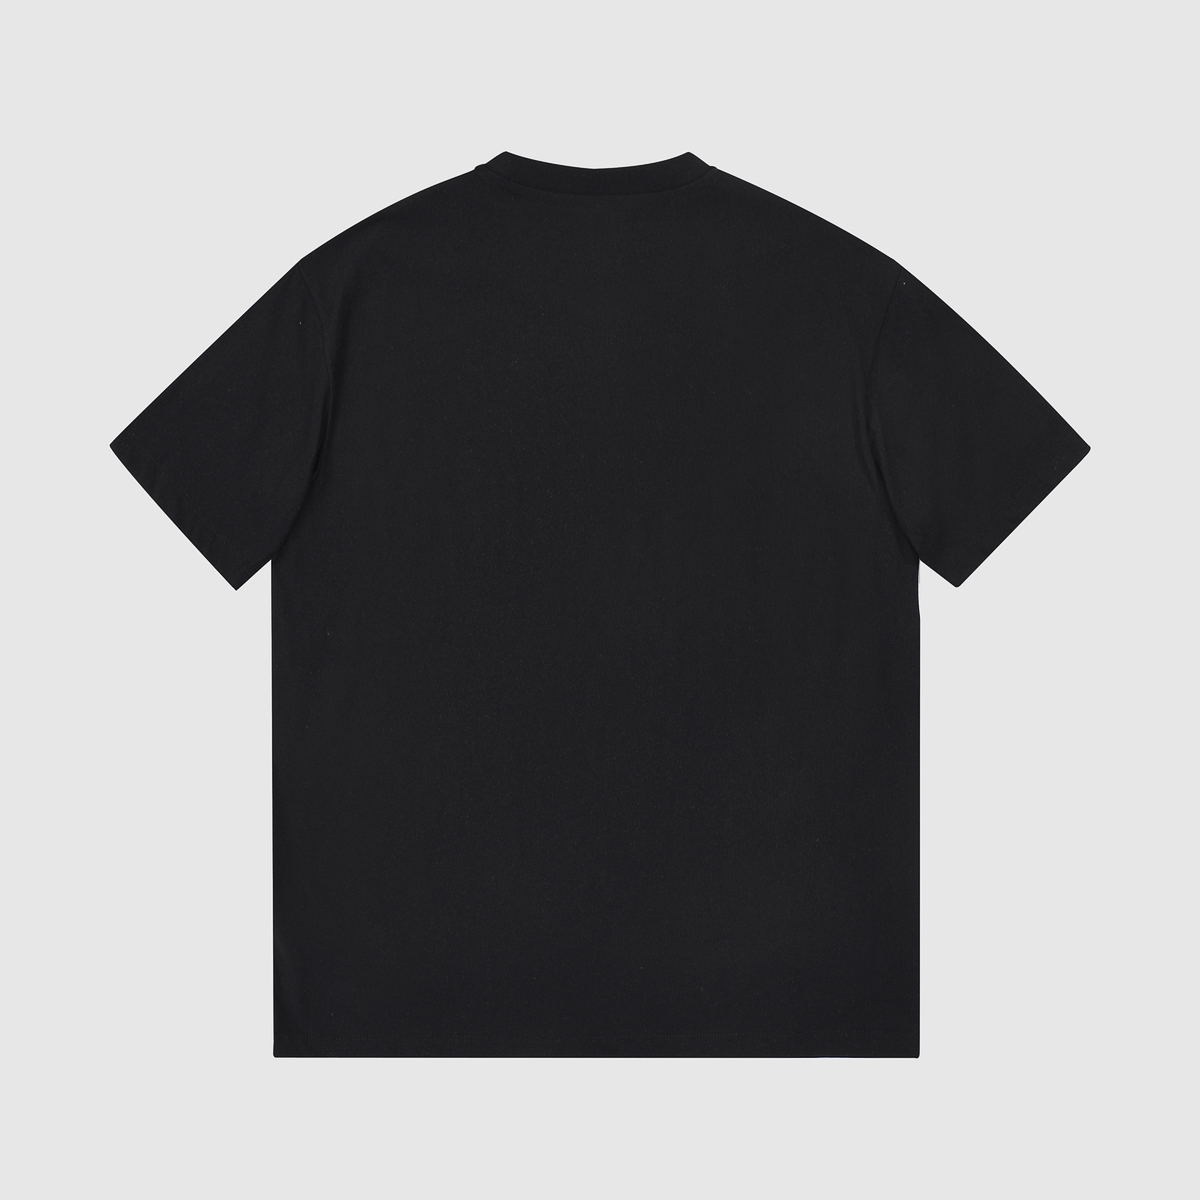 Gucci shirt MC340064 Updated in 2021.03.36